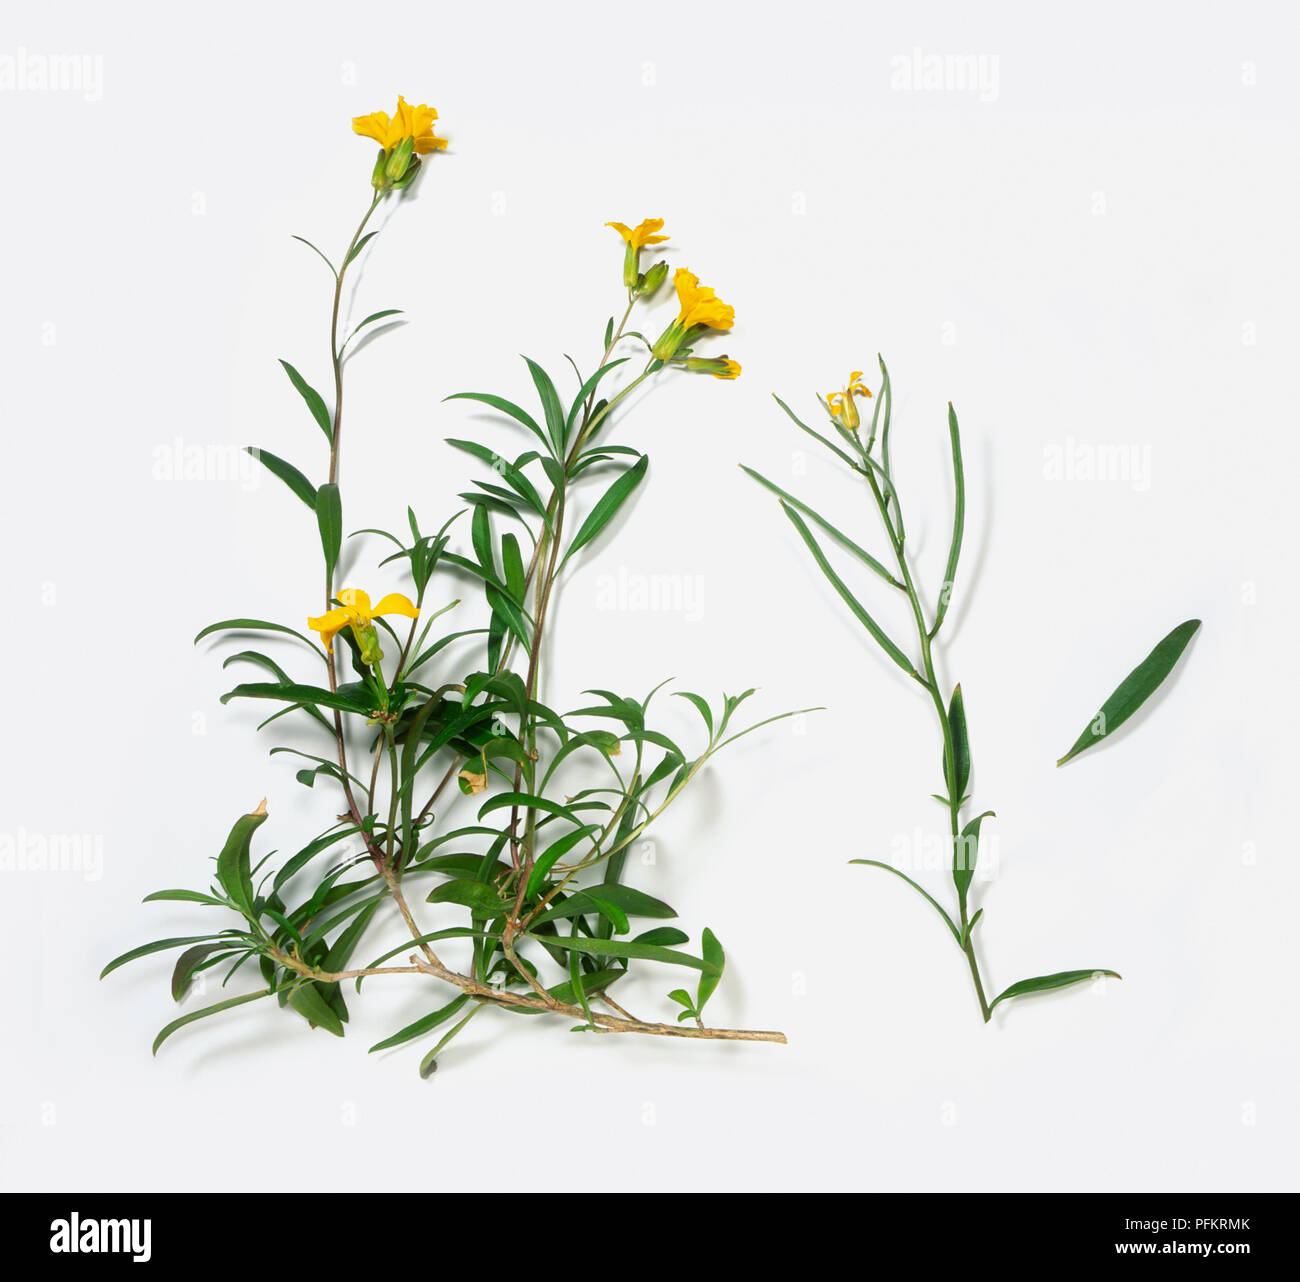 Erysimum cheiri (Wallflower), stems and leaves of yellow wildflowers Stock Photo